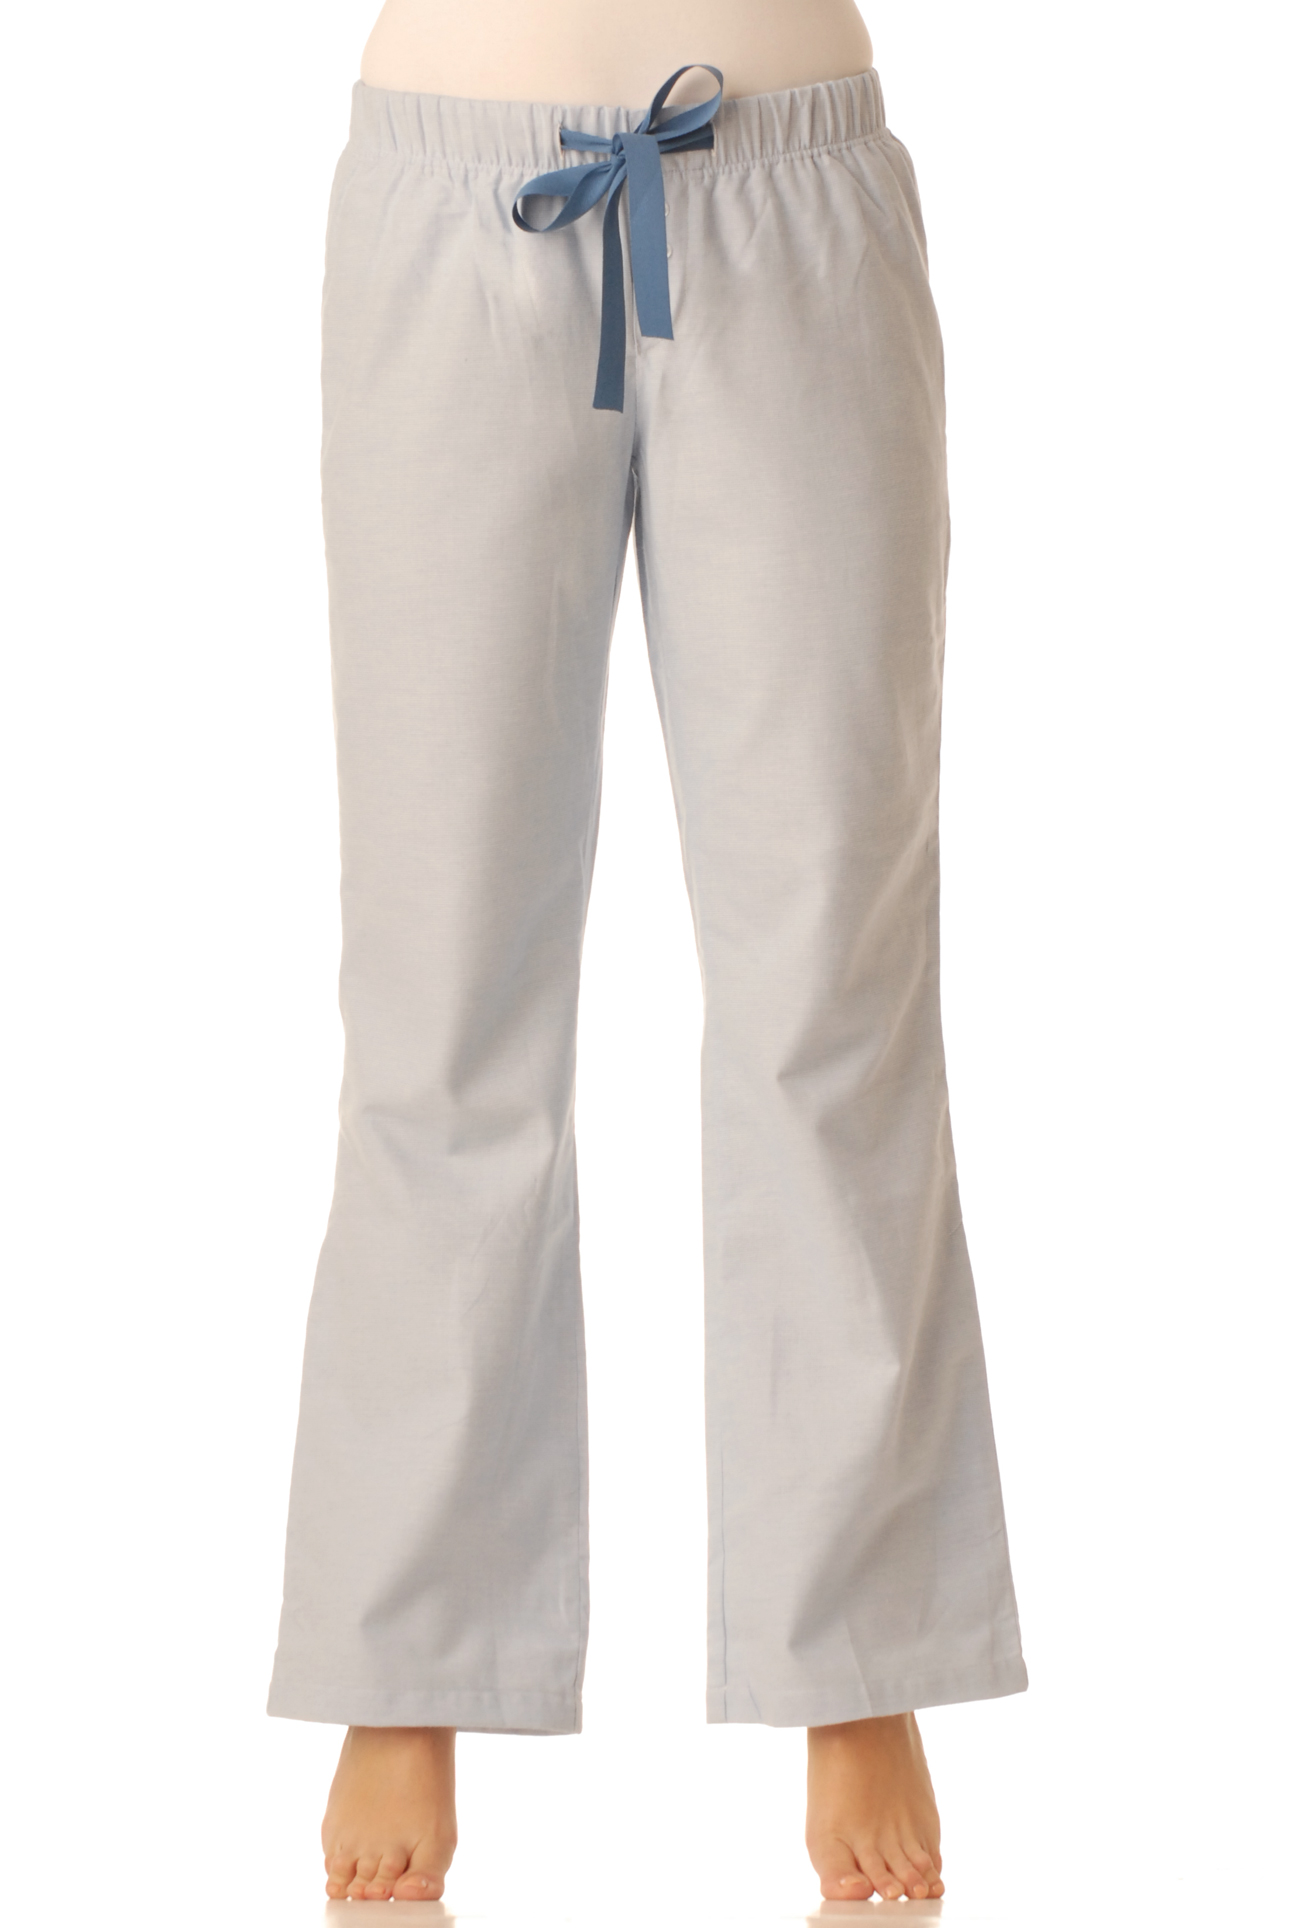 Flanelové pyžamové kalhoty - Modré pepitko